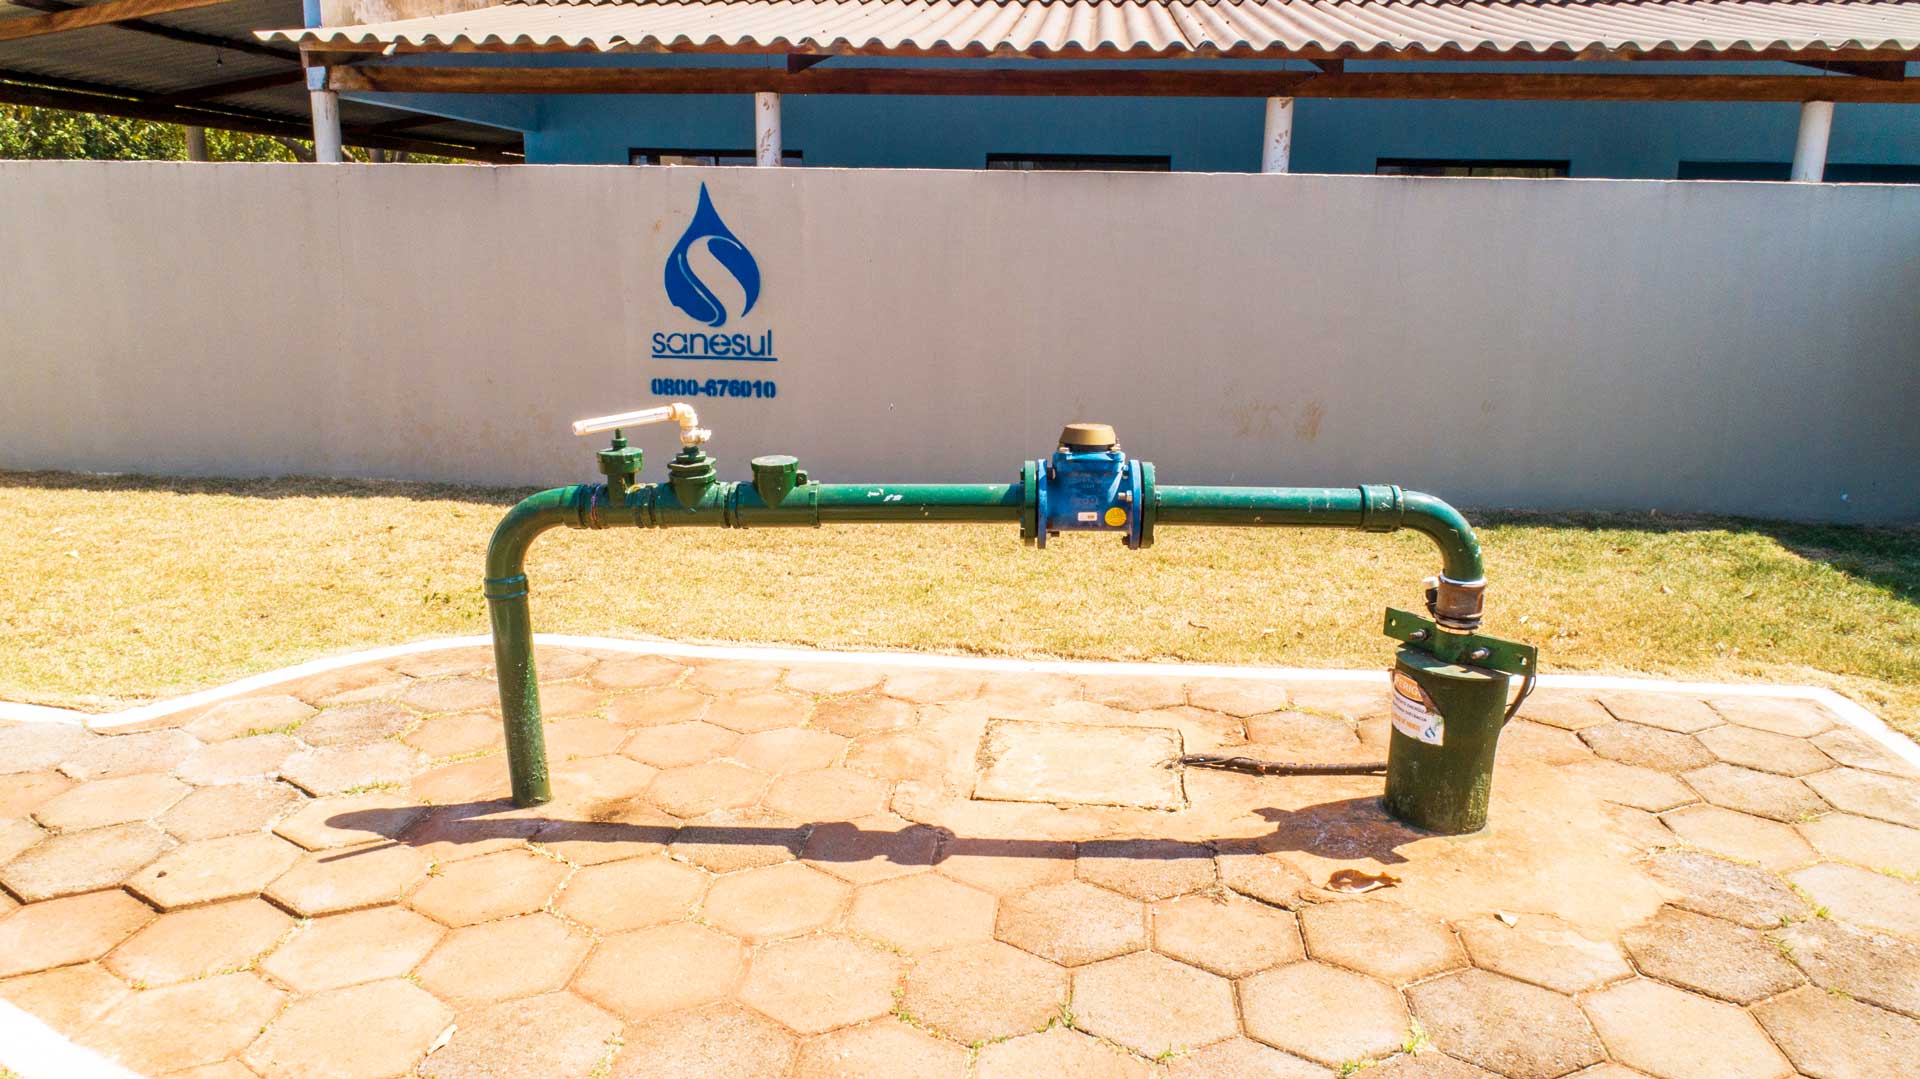 Sanesul ampliará a captação de água tratada na cidade de Nova Andradina                                                                                                                                                                                                                                                                                                                                                                                                                                             